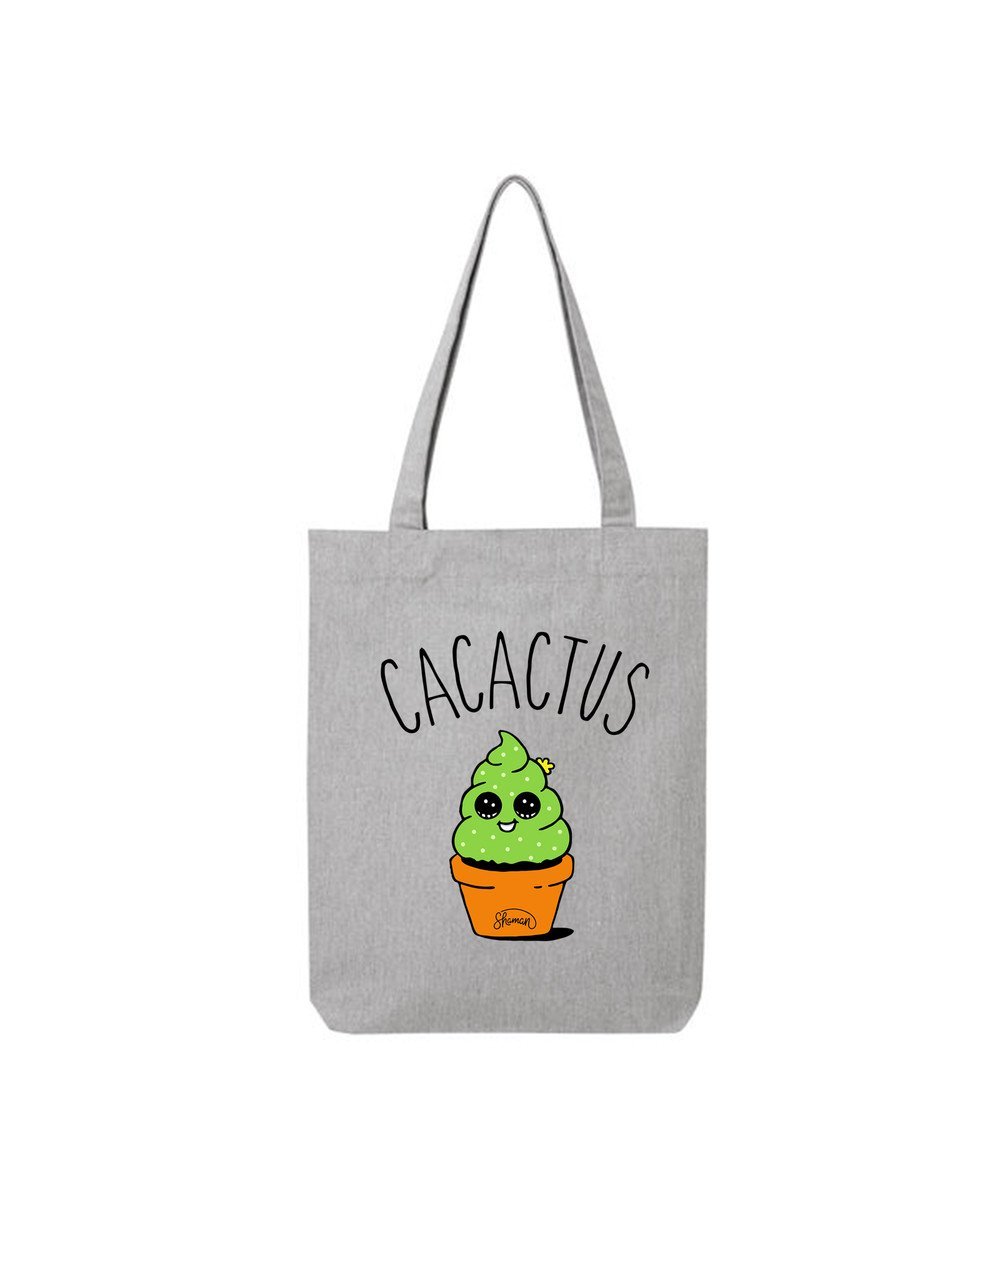 Tote Bag "cacactus"